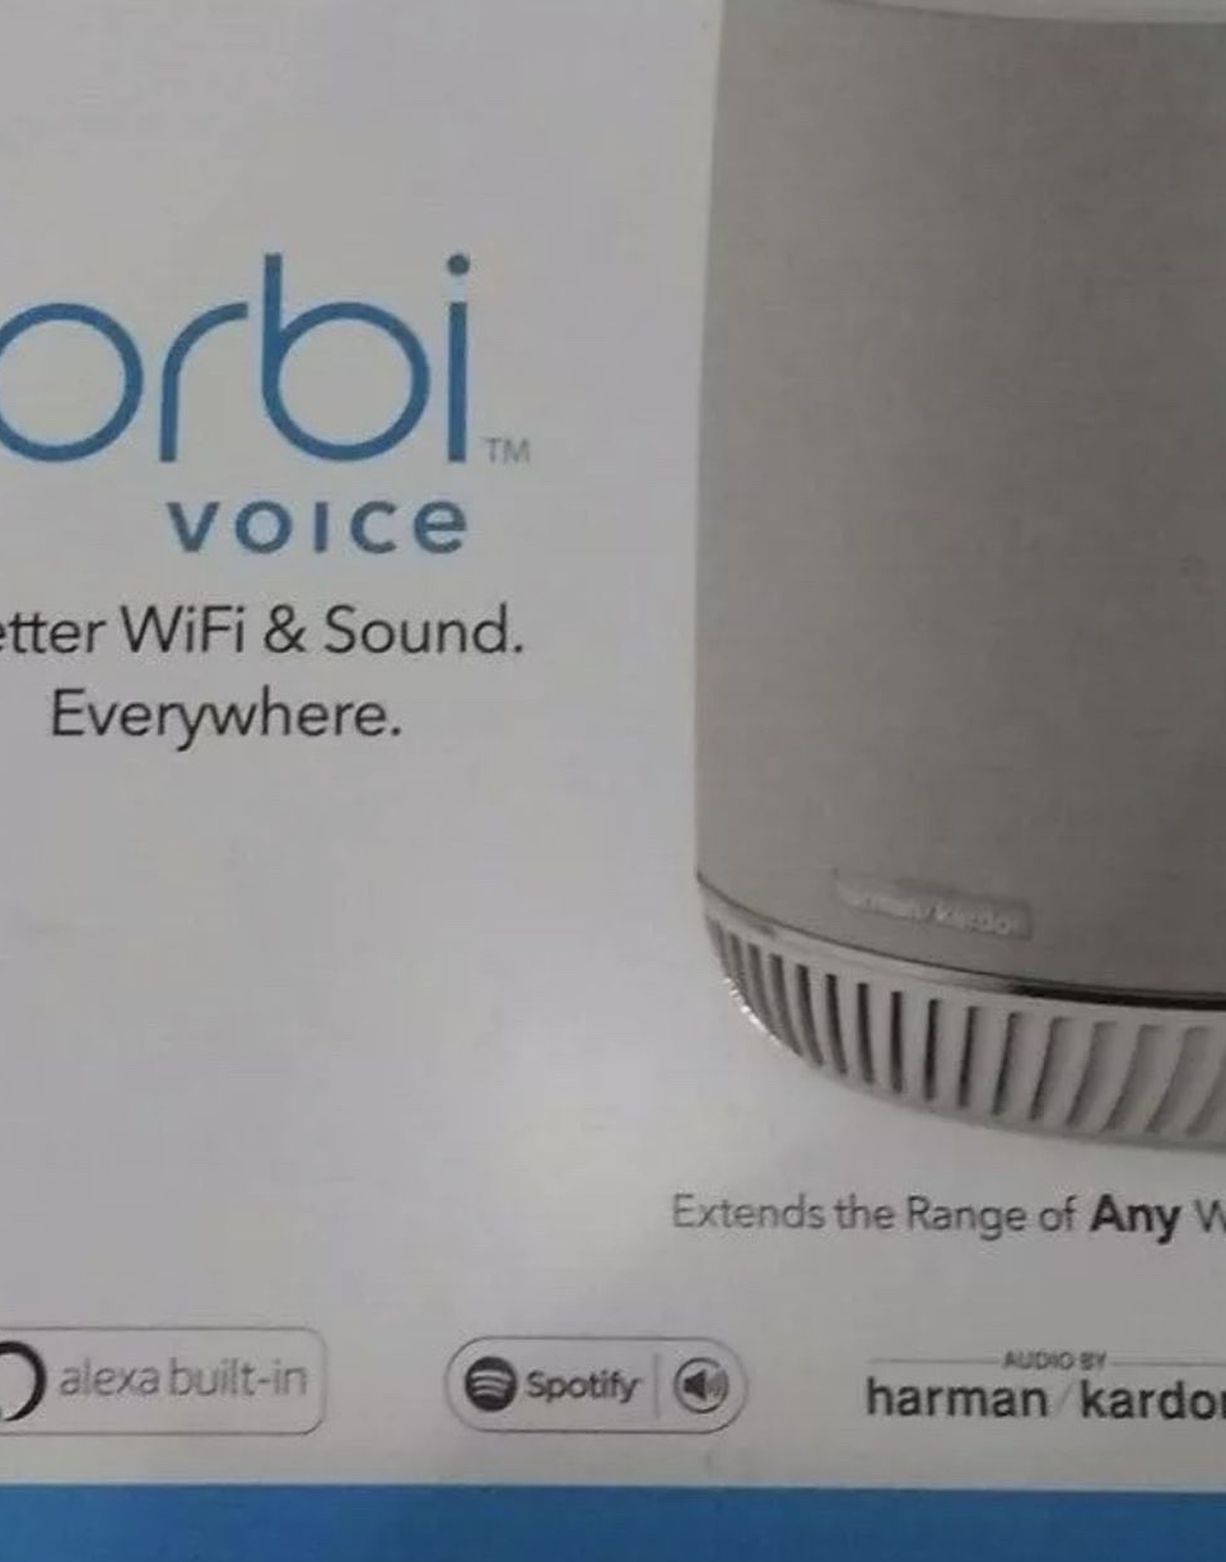 Orbi WiFi Extender & Harman Kardon Wireless Smart Speaker